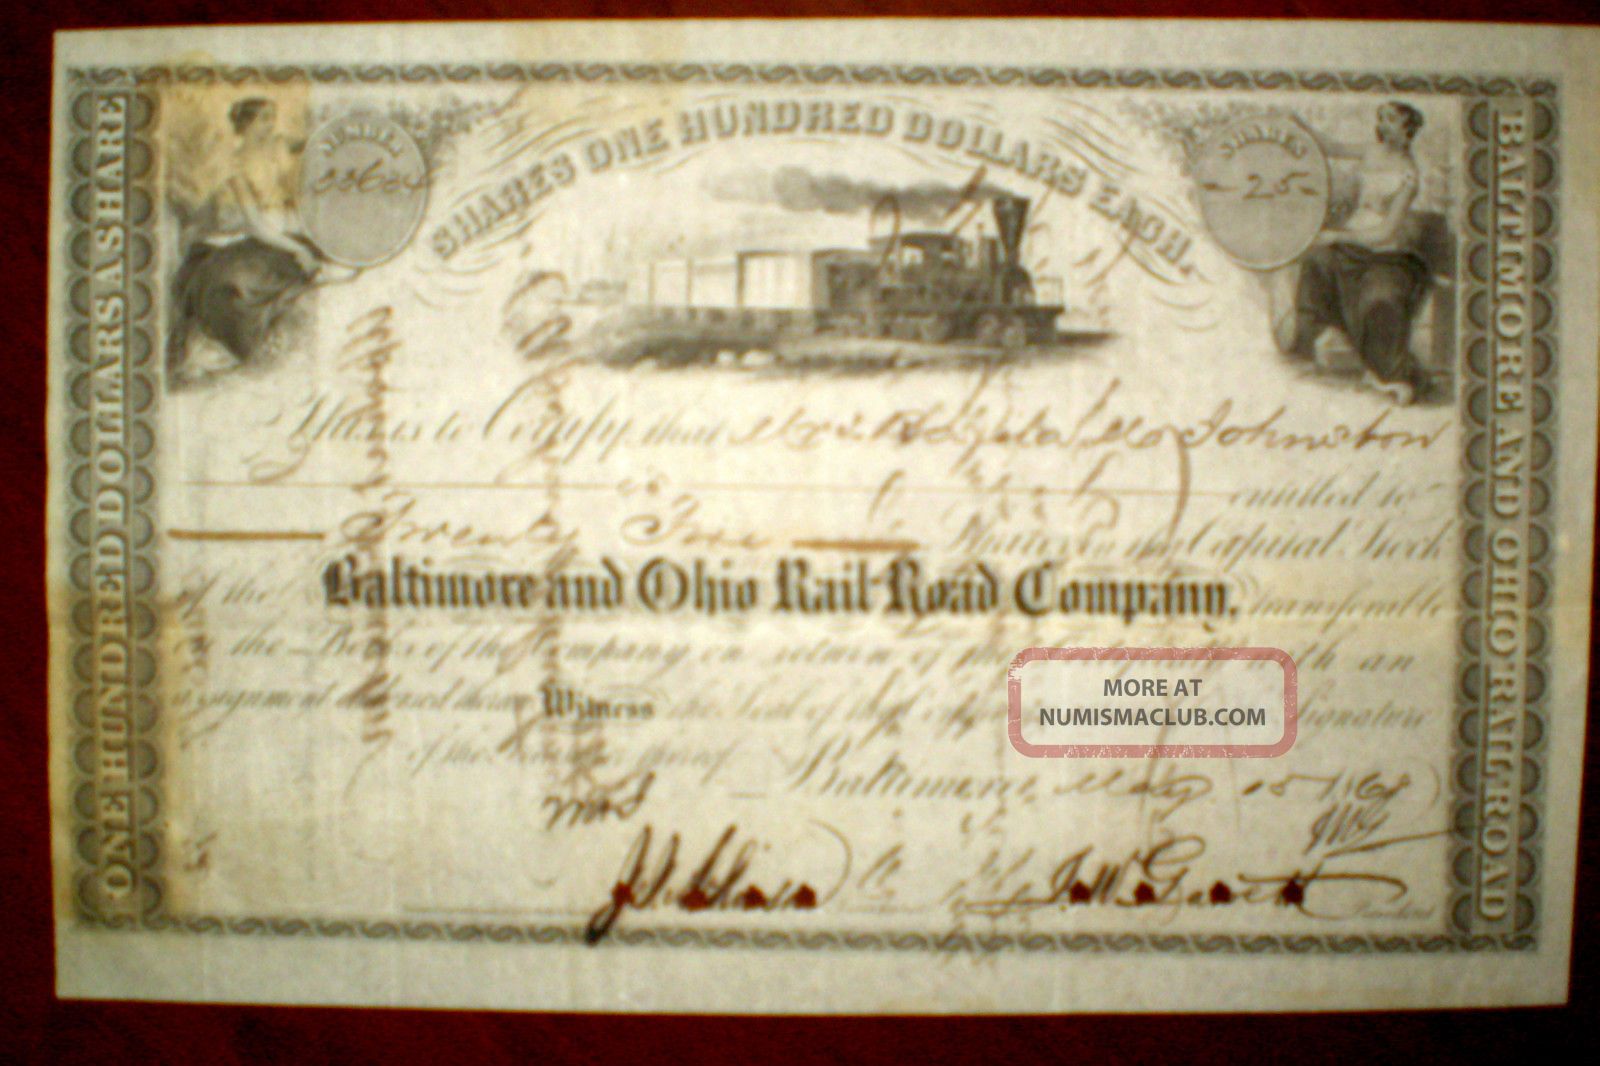 The Baltimore Ohio Railroad Company,  Share Certificate 1868 Stocks & Bonds, Scripophily photo